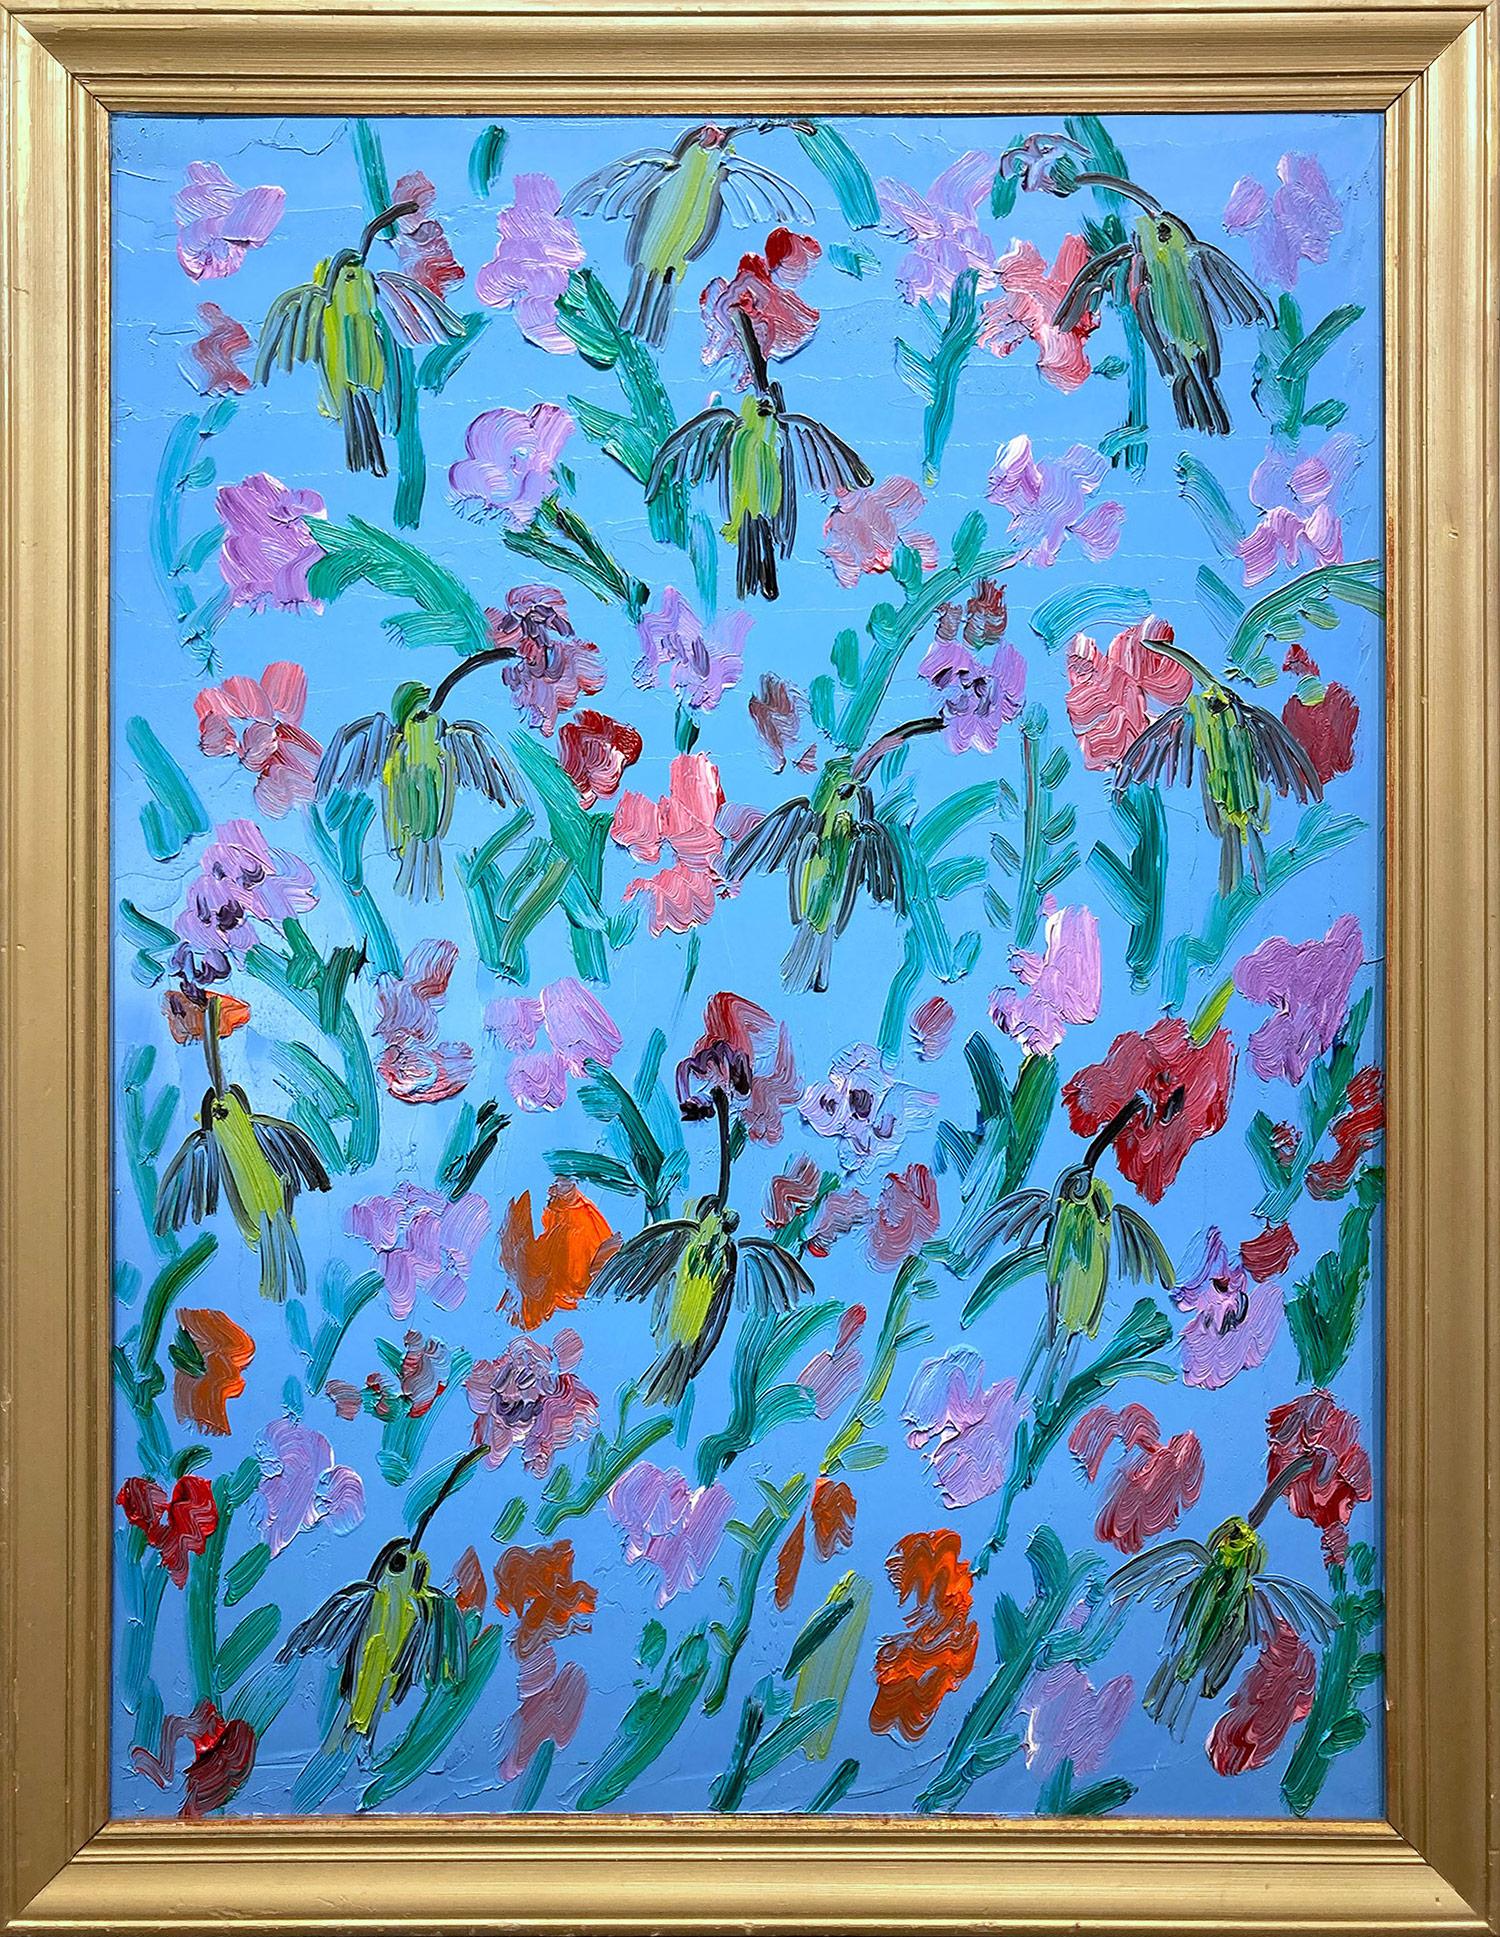 Animal Painting Hunt Slonem - "Hummingbirds Bouganvilla" Peinture à l'huile sur panneau de bois encadrée, fond bleu ciel